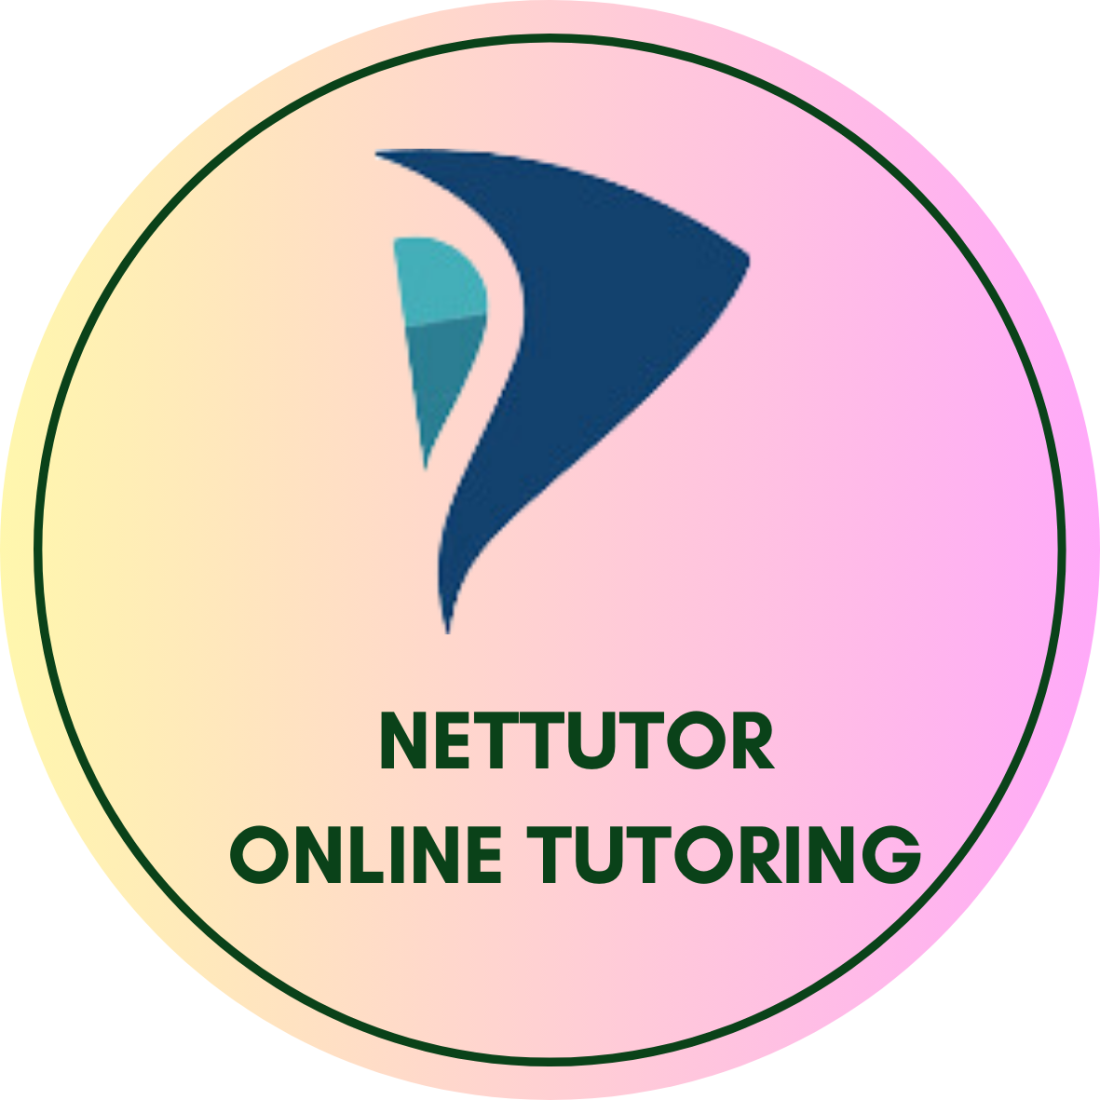 NetTutor Online Tutoring